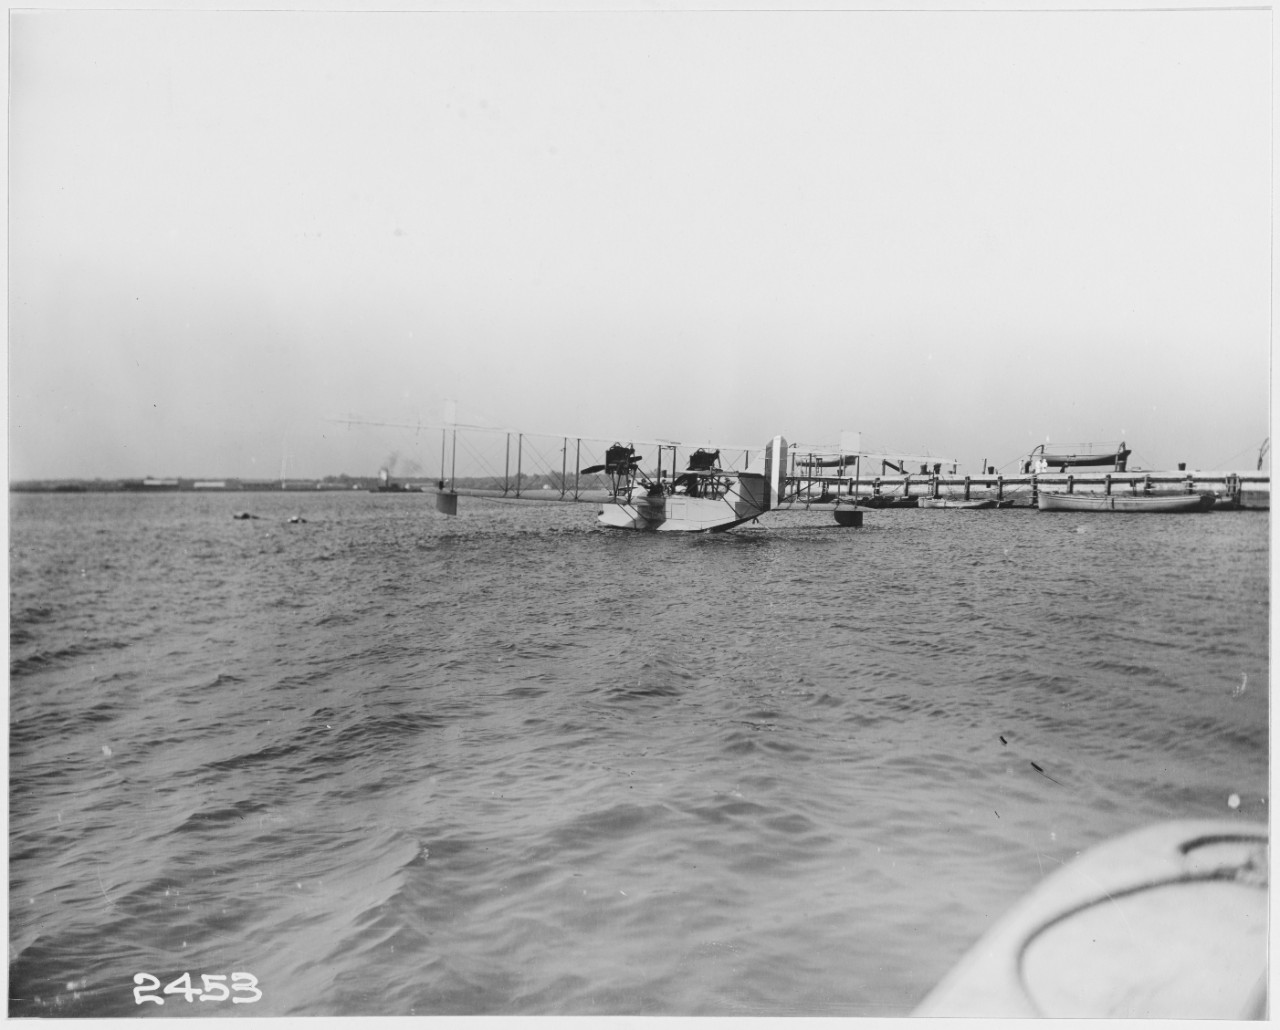 N.A.F.C-1 Boat Floating at Moorings